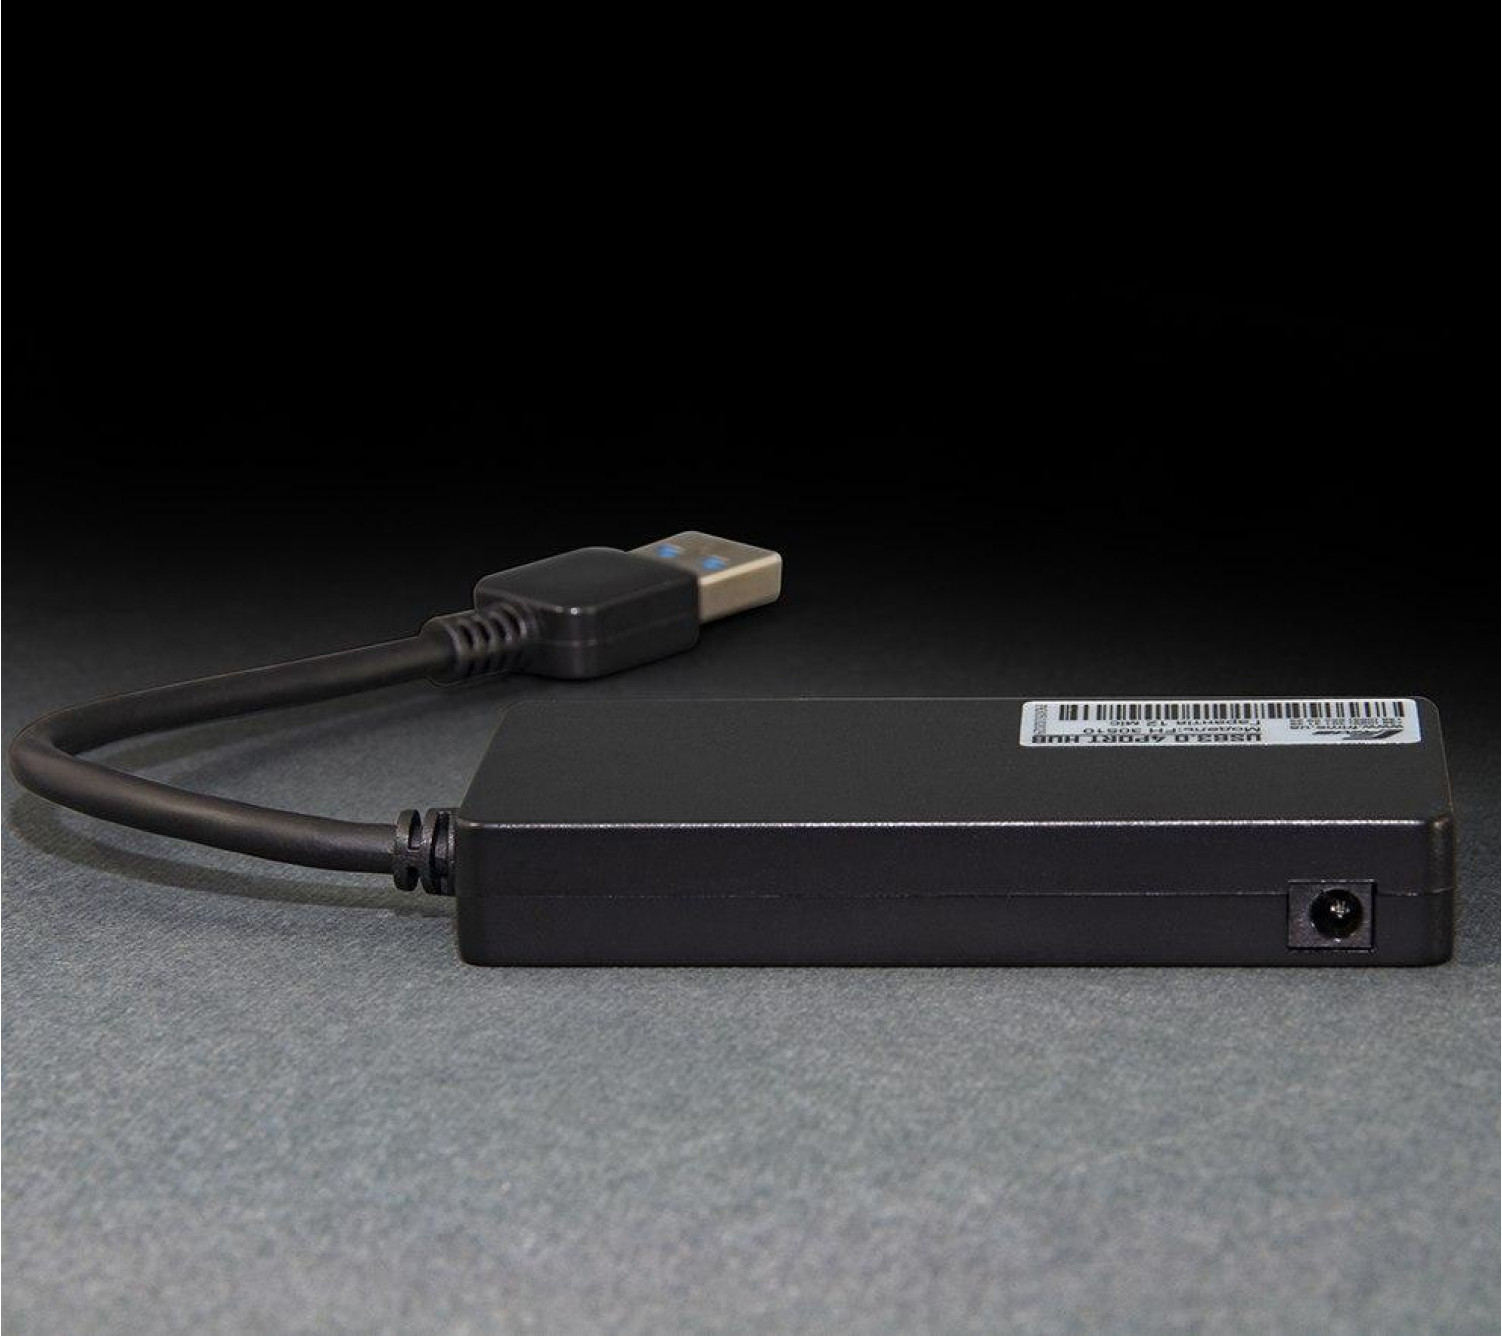 USB-хаб Frime 4-х портовый 3.0 Black (FH-30510)